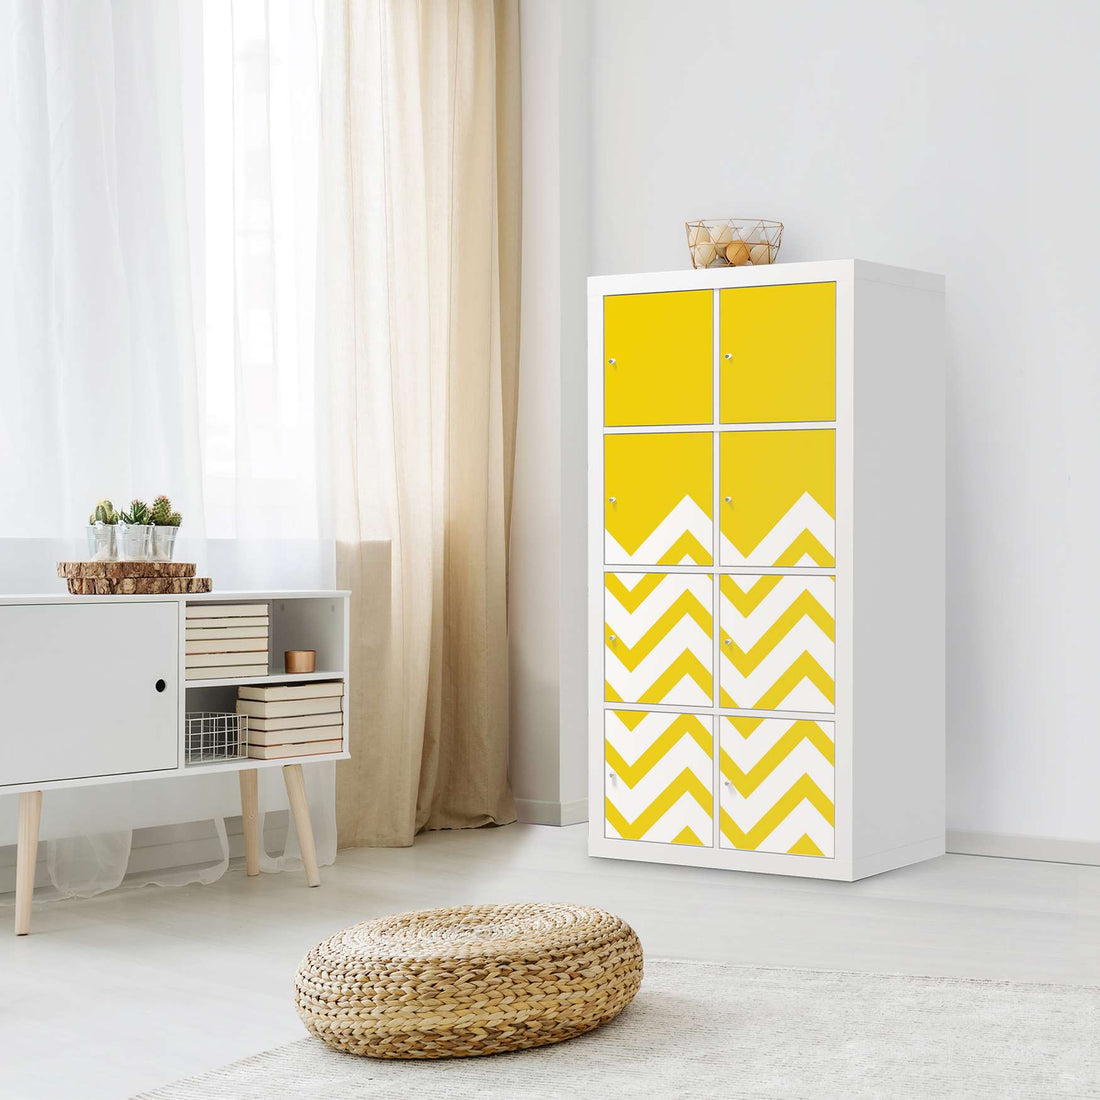 Folie für Möbel Gelbe Zacken - IKEA Kallax Regal 8 Türen - Wohnzimmer